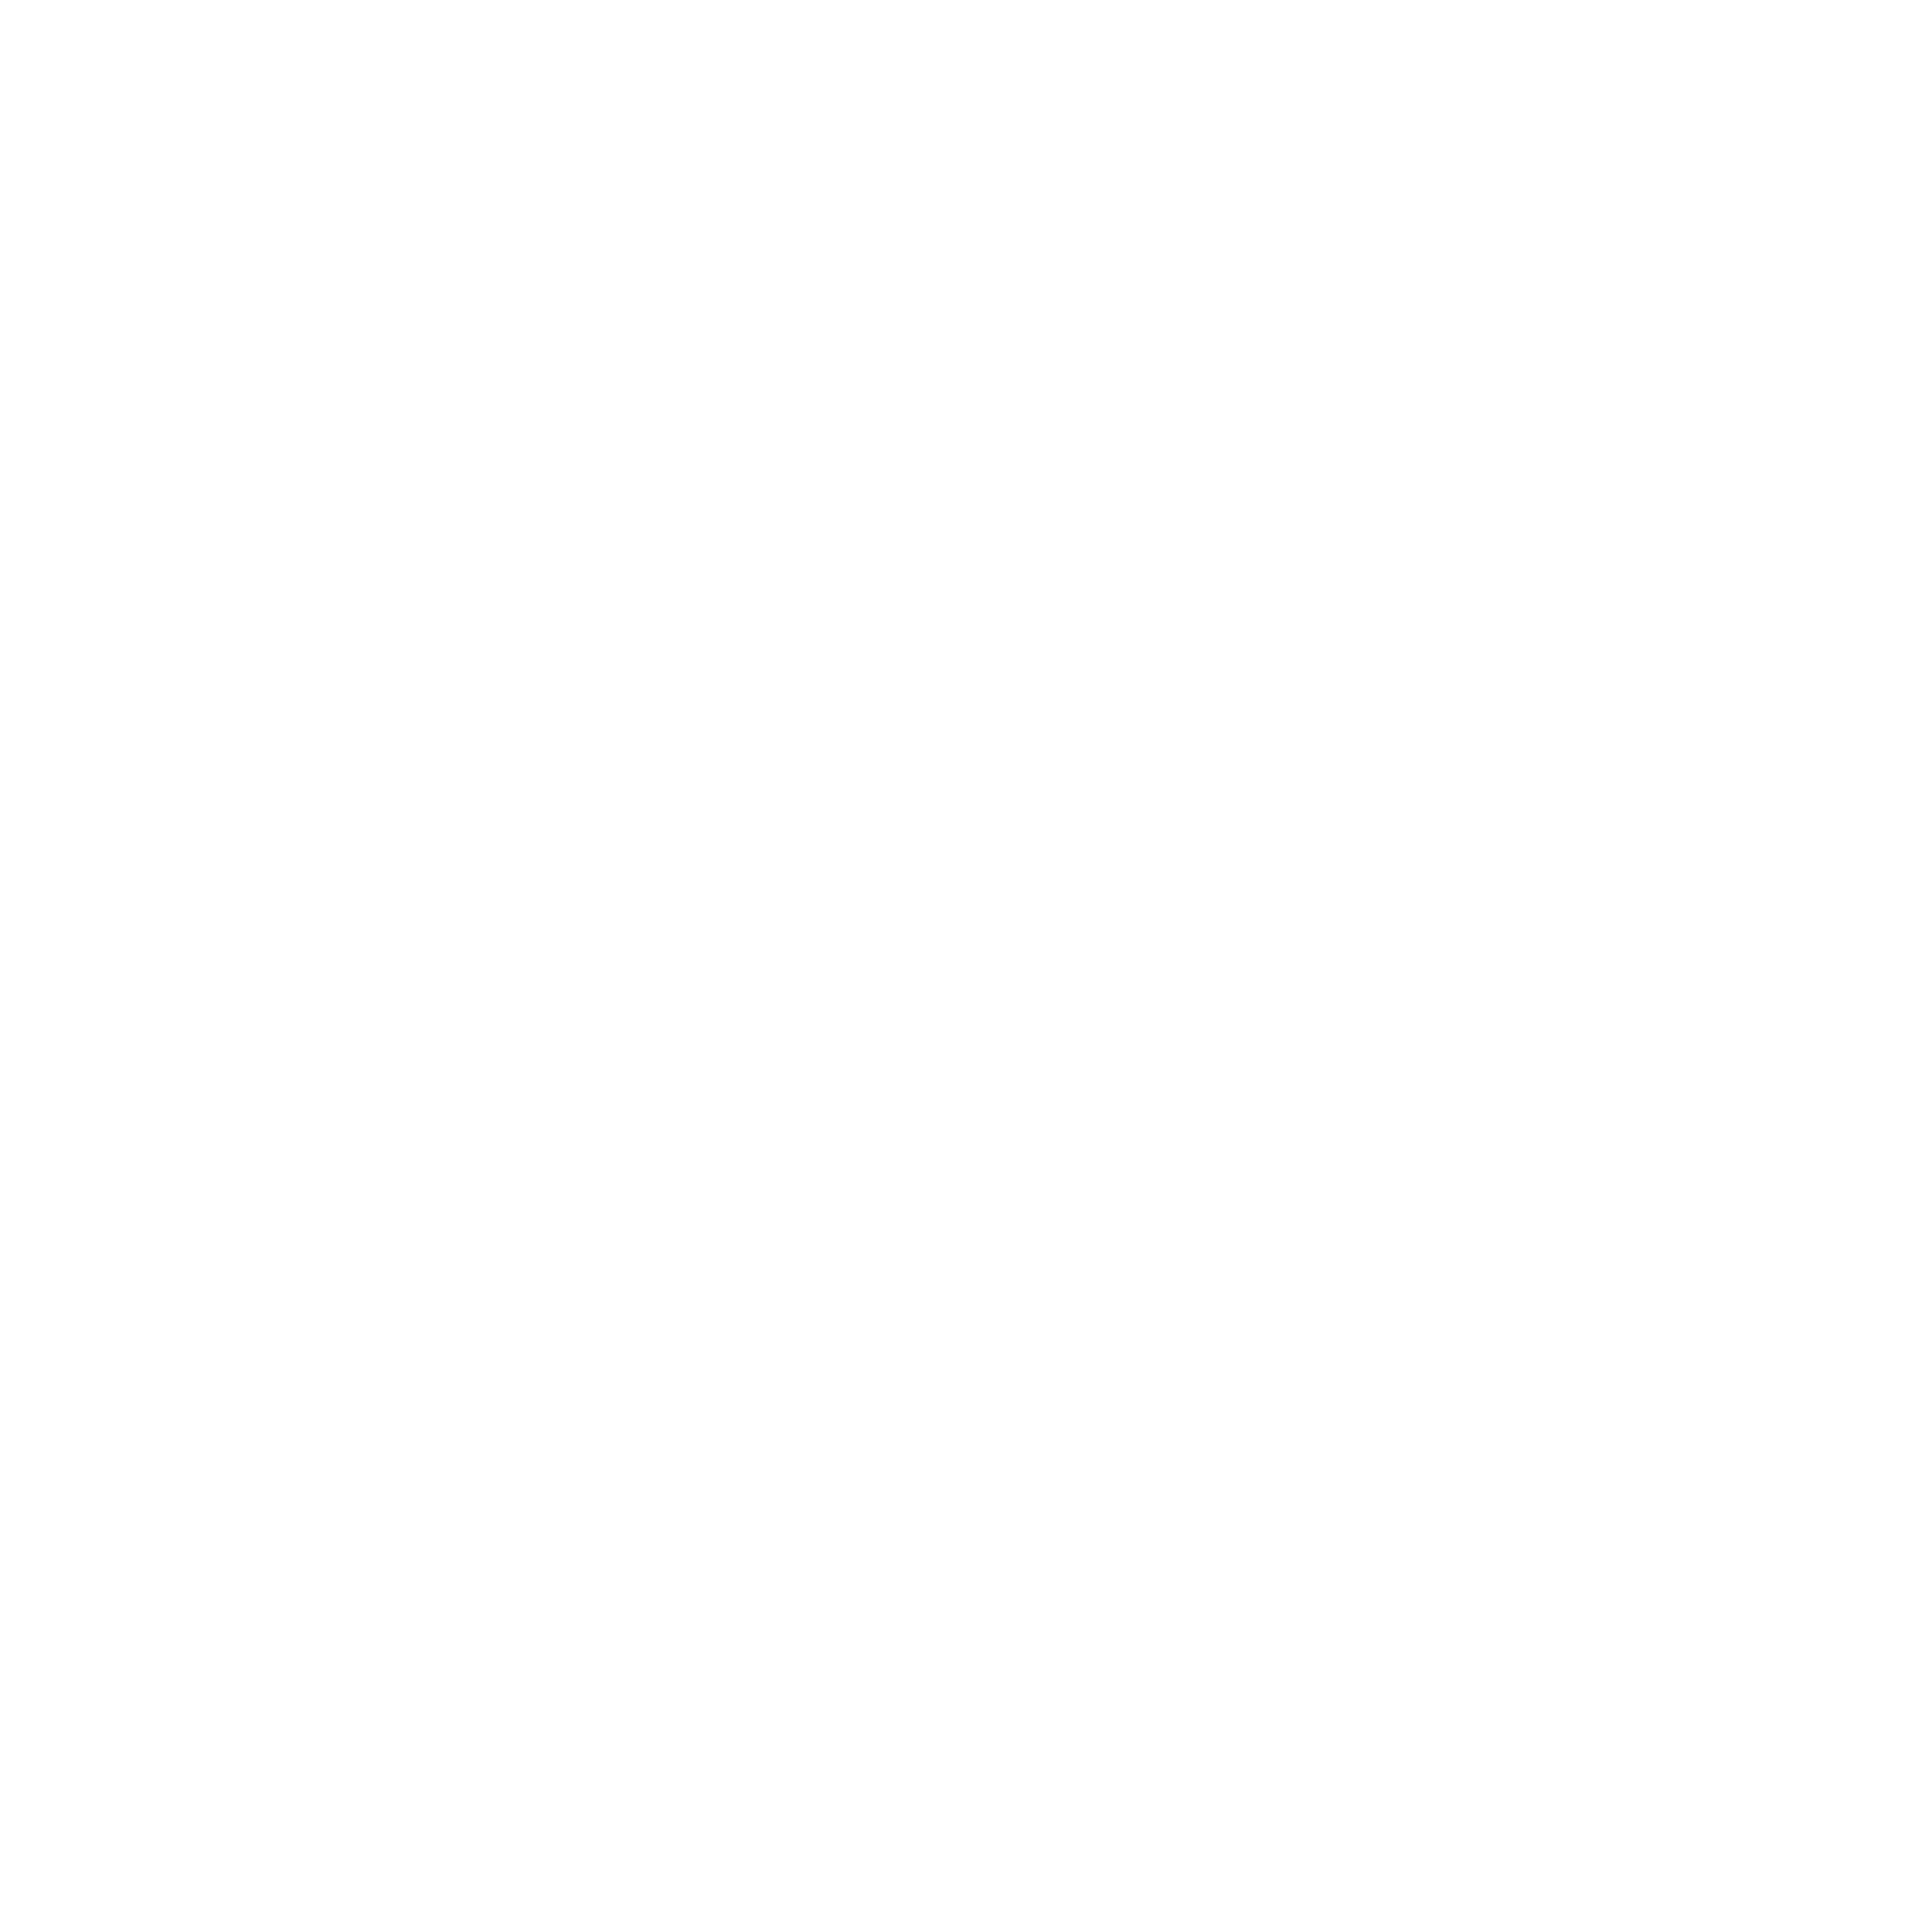 m4 logo